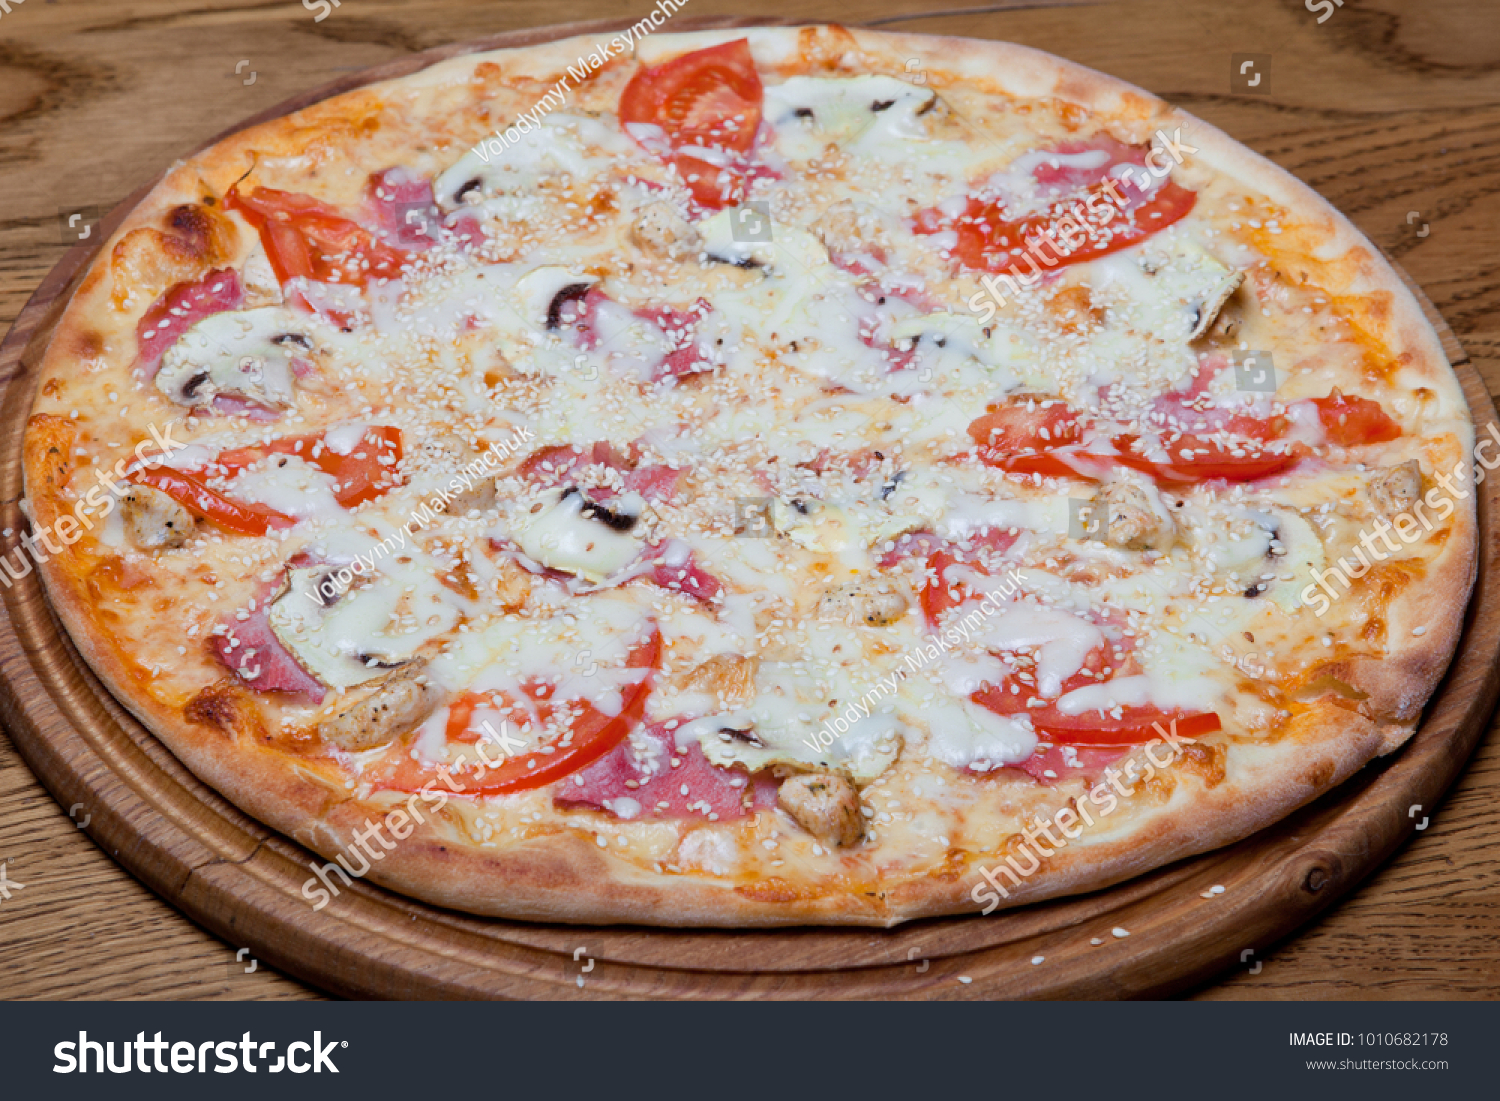 Pizza Milano on Pizza Milano creamy base, chicken fillet, mushrooms, tomatoes, mozzarella, sauce, oregano on a plate. plate #1010682178